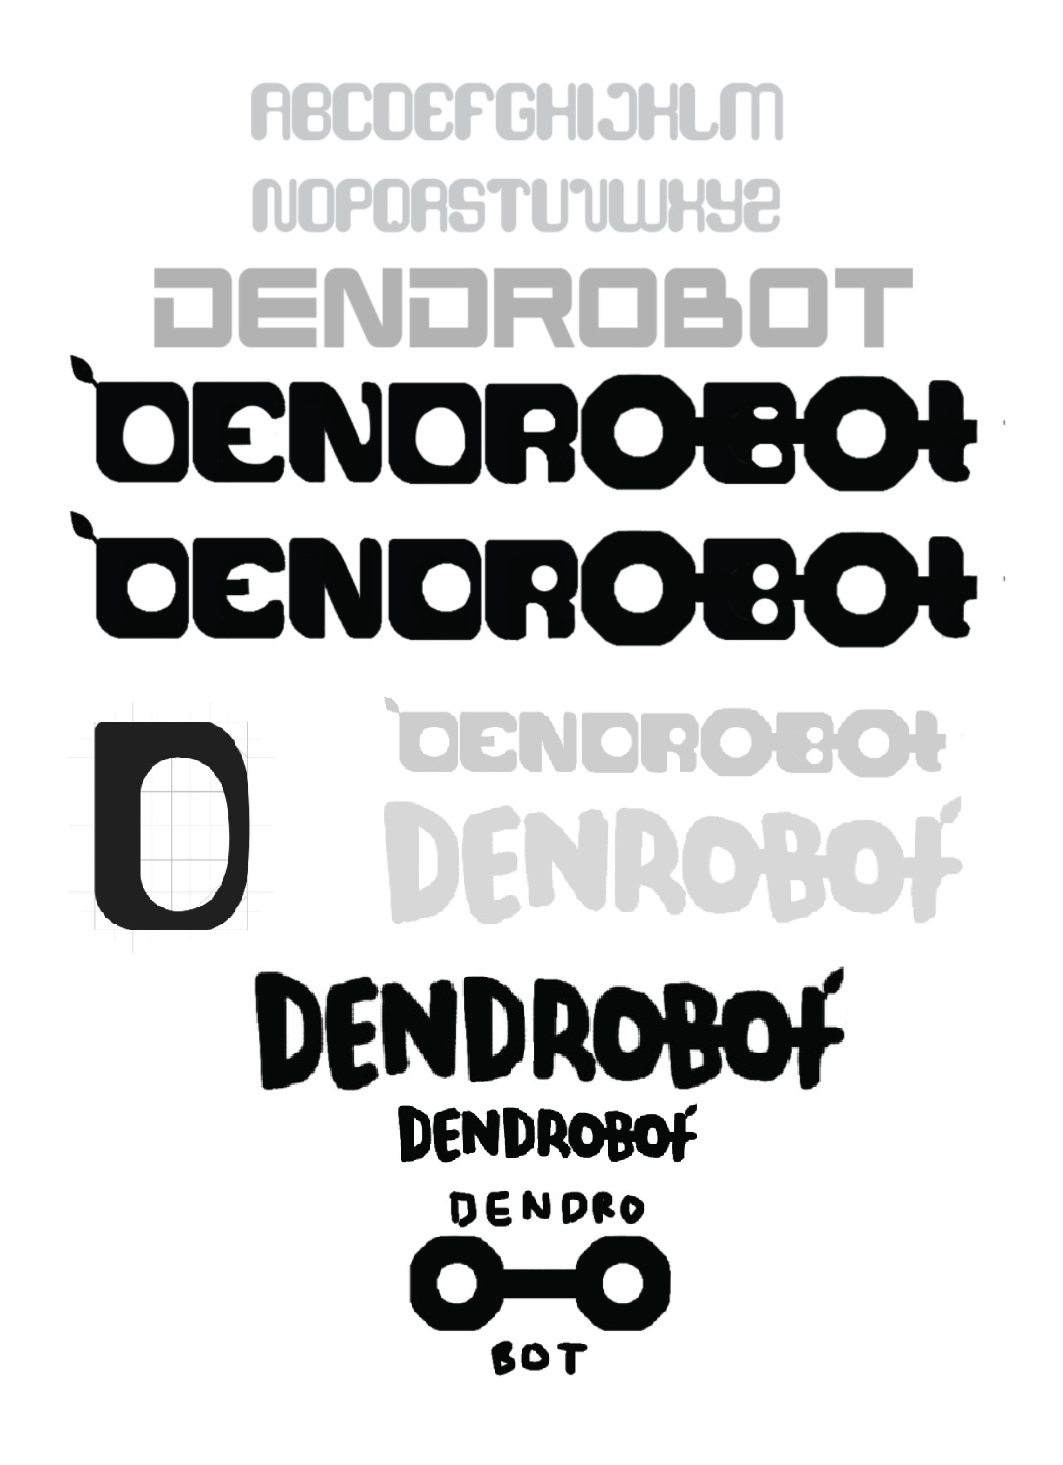 Dendrobot 19